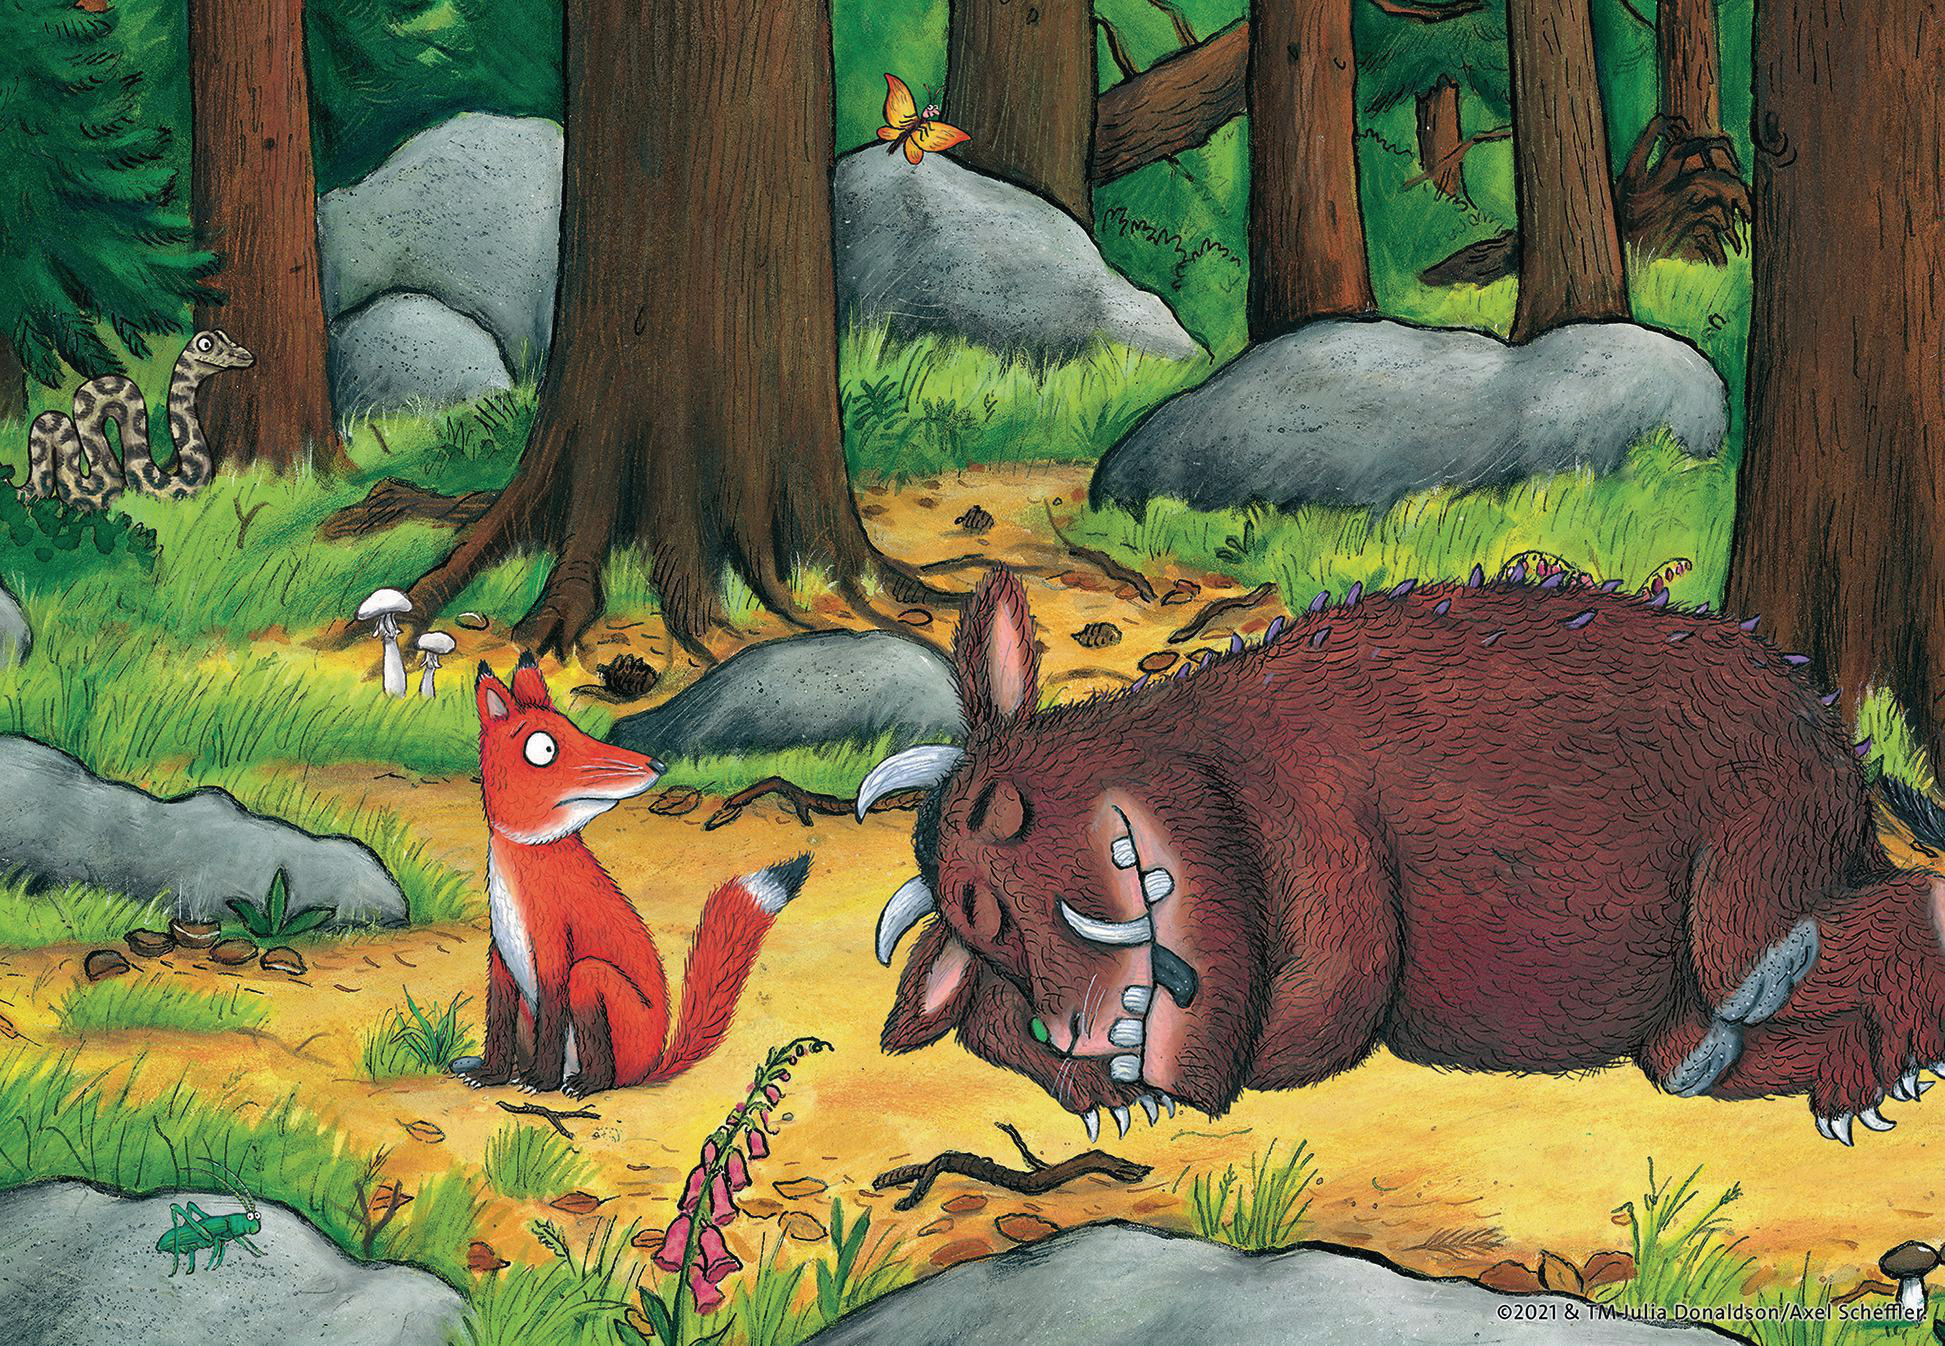 Puzzle RAVENSBURGER und die Waldes Tiere des Mehrfarbig Grüffelo